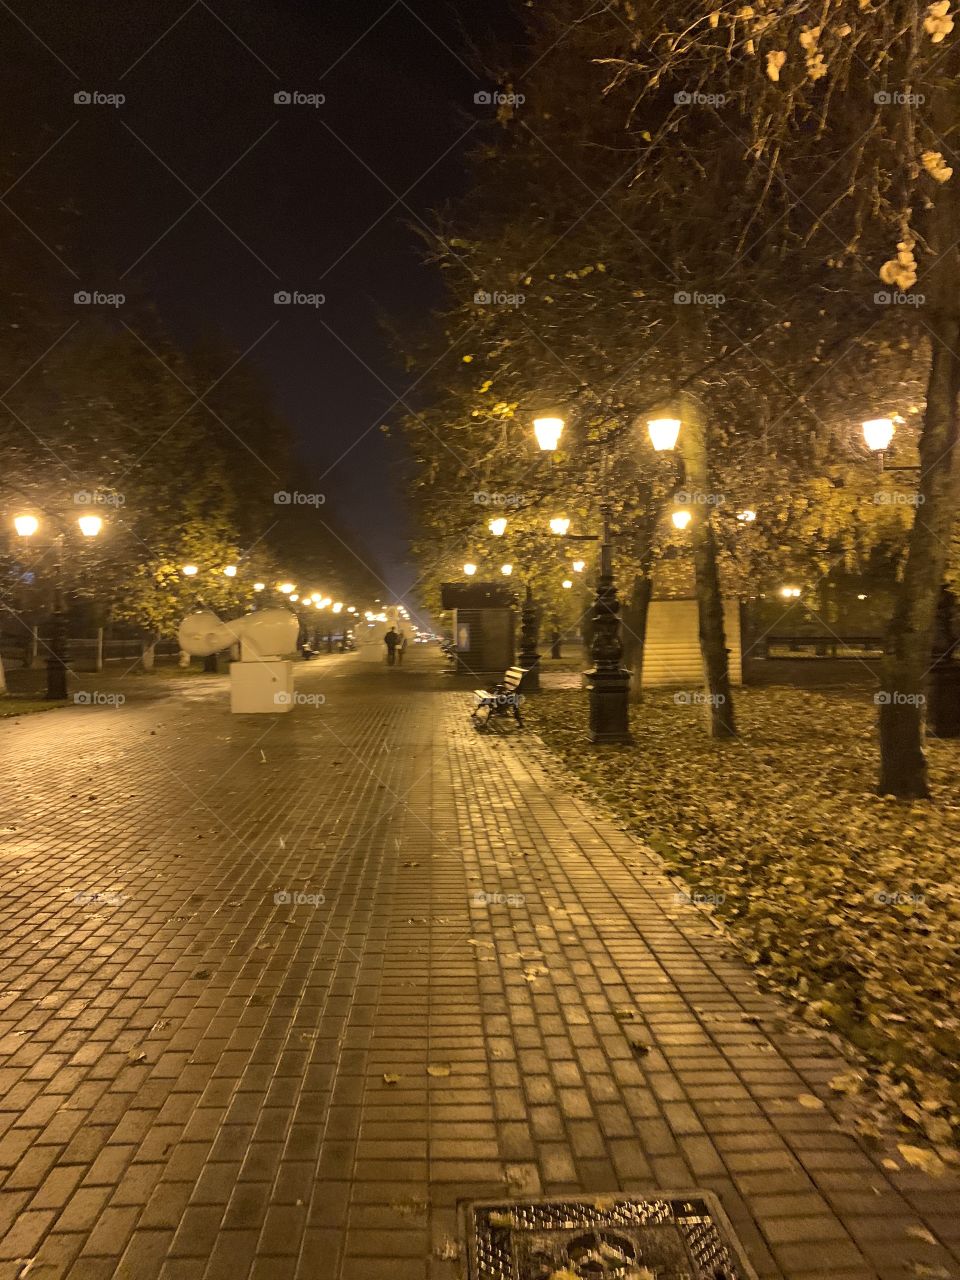 night city street in autumn